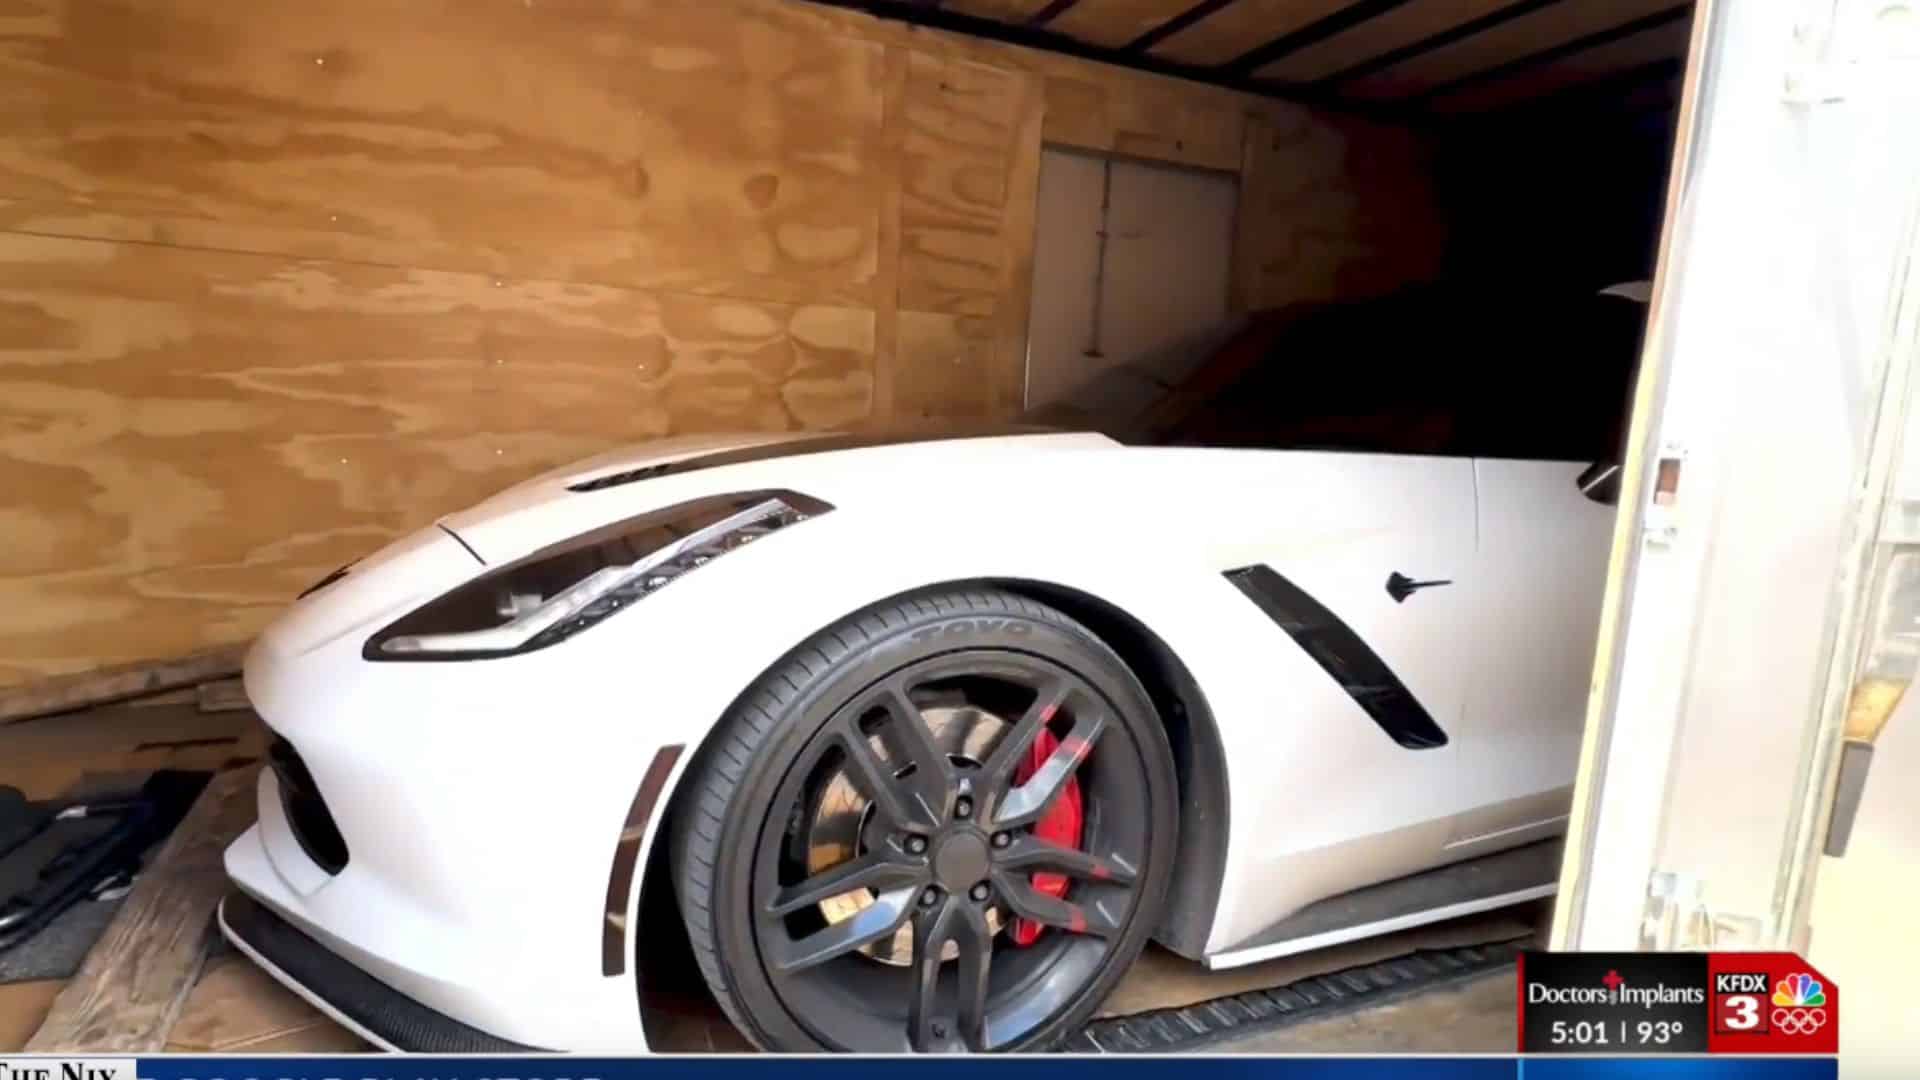 Stolen Corvette Recovered Thanks To GPS Tracker